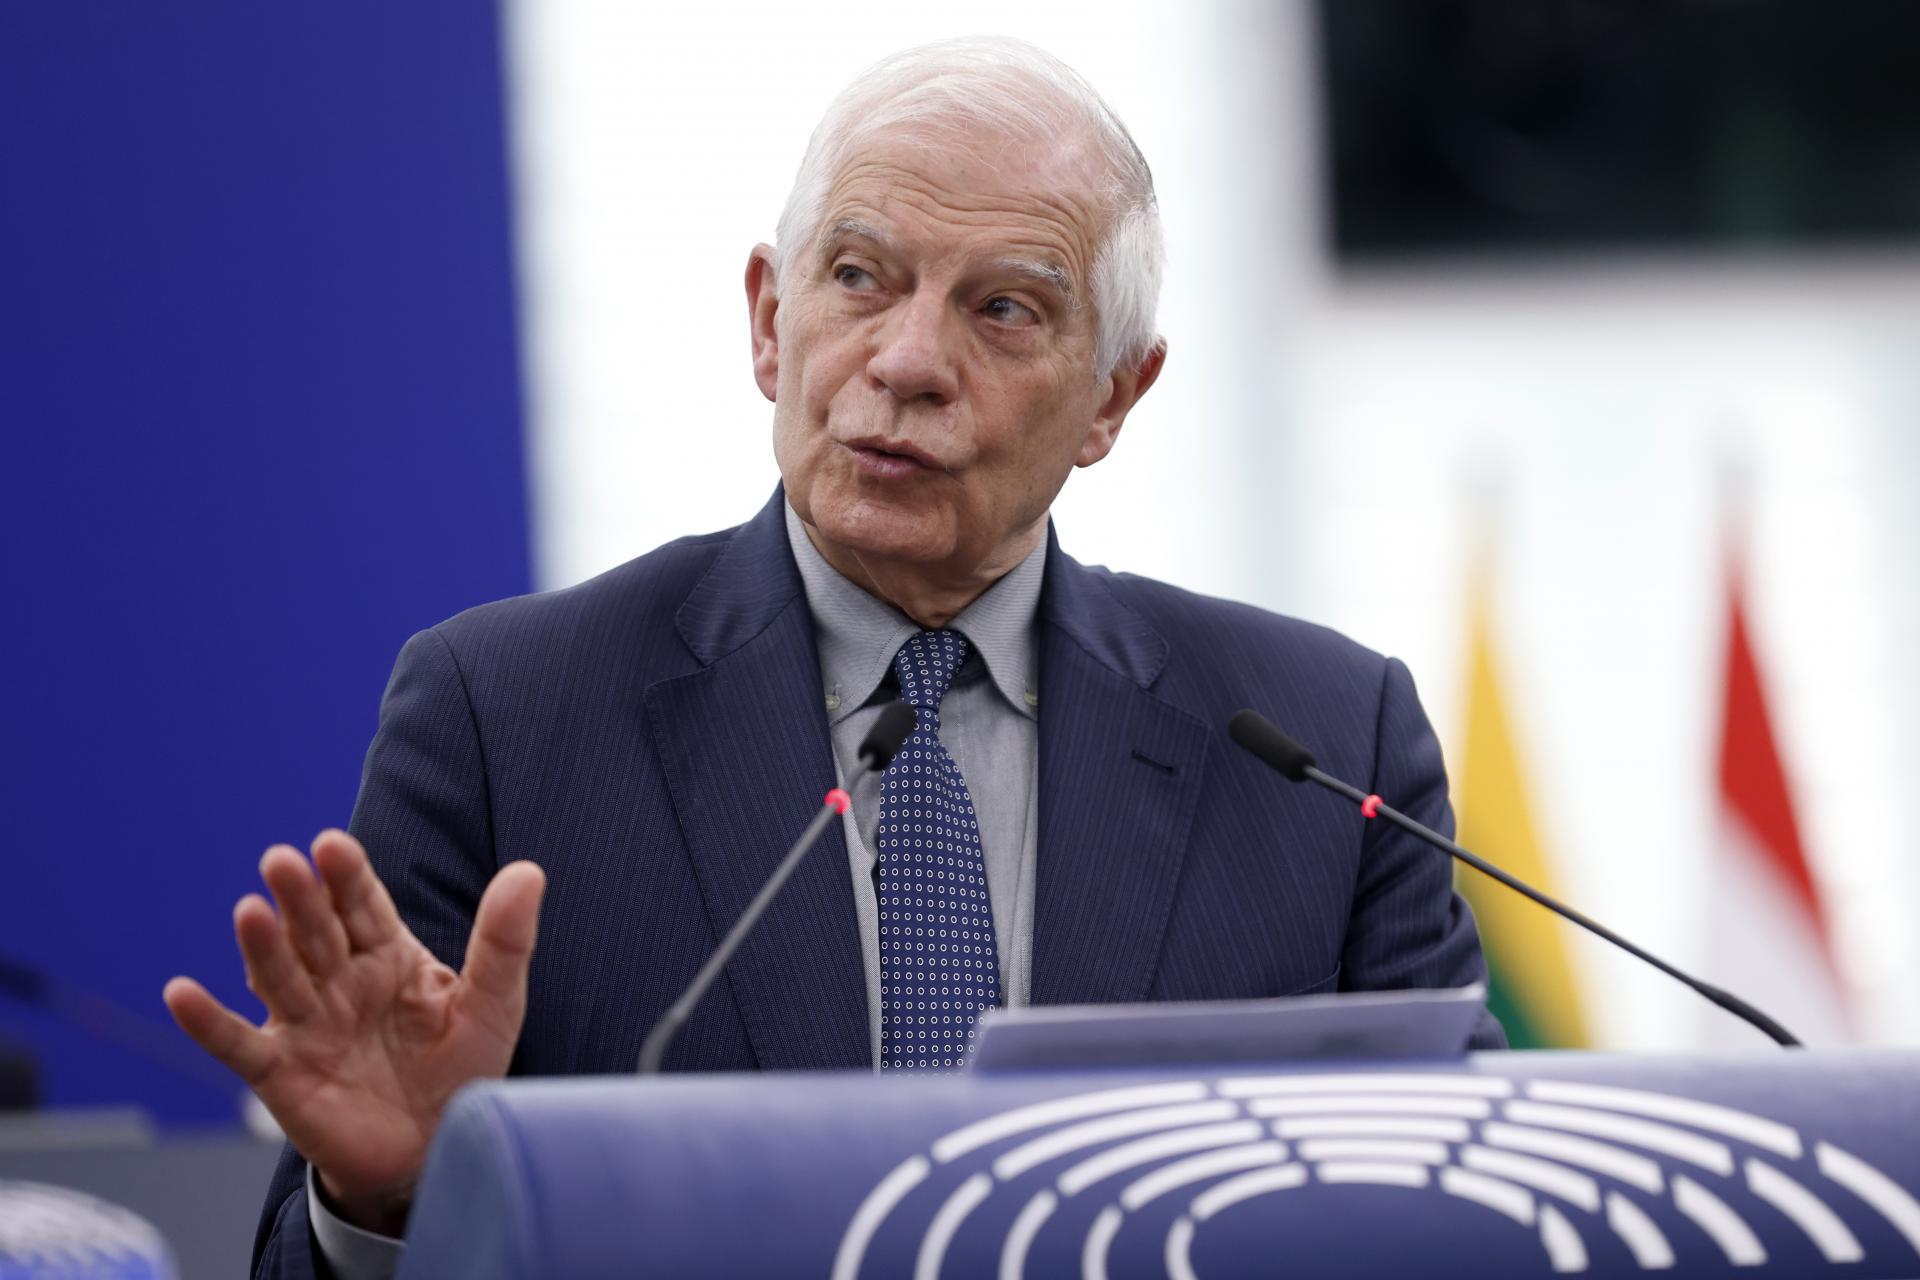 Európska únia si musí vybrať, či podporí medzinárodné inštitúcie, alebo Izrael, vyhlási, Borrell